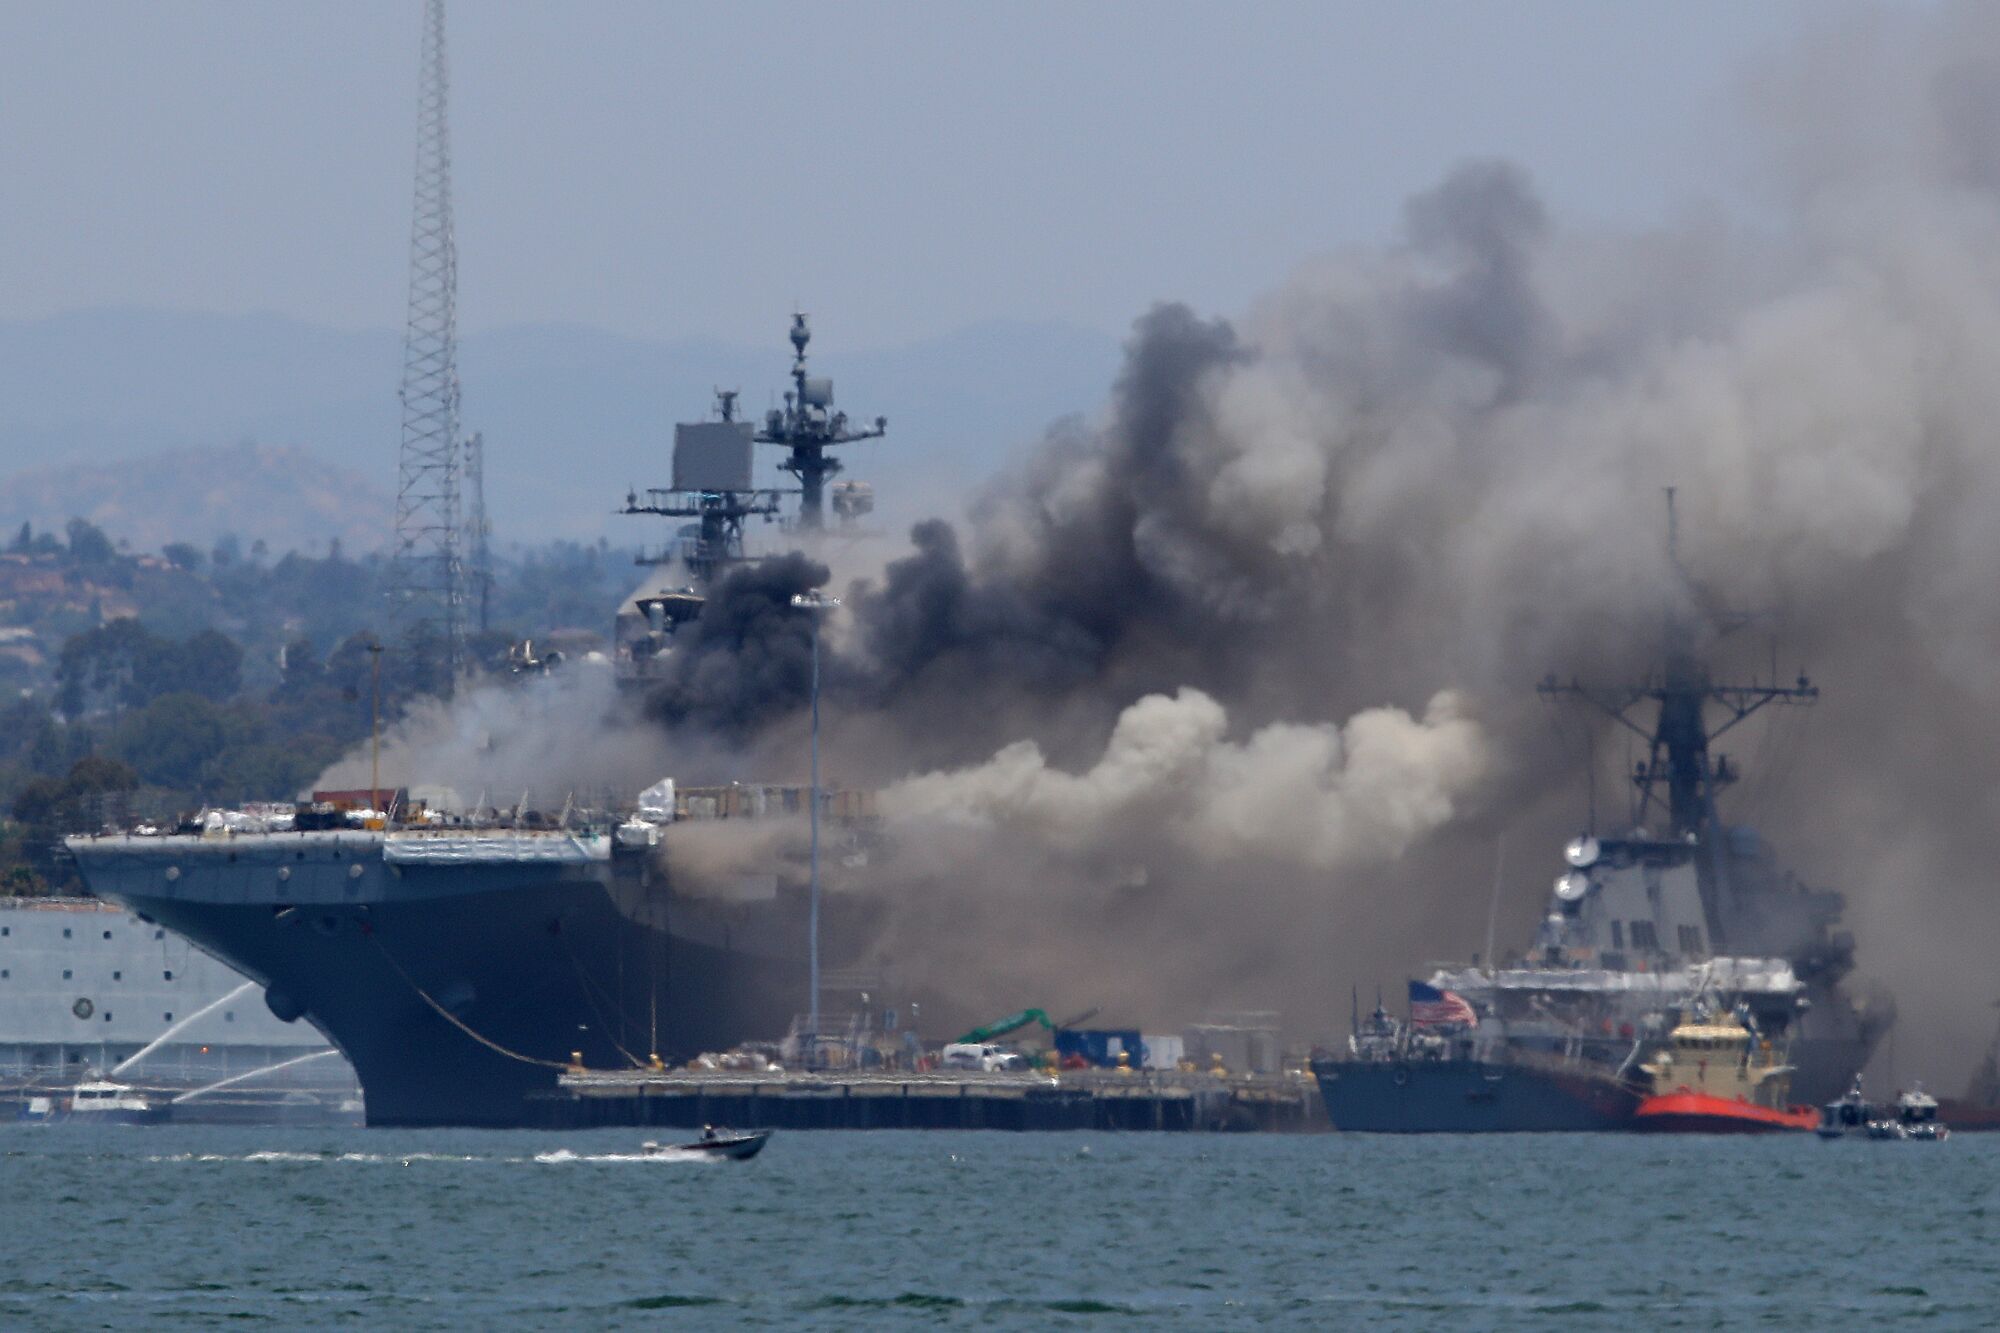 Fire burns on the amphibious assault ship USS Bonhomme Richard 